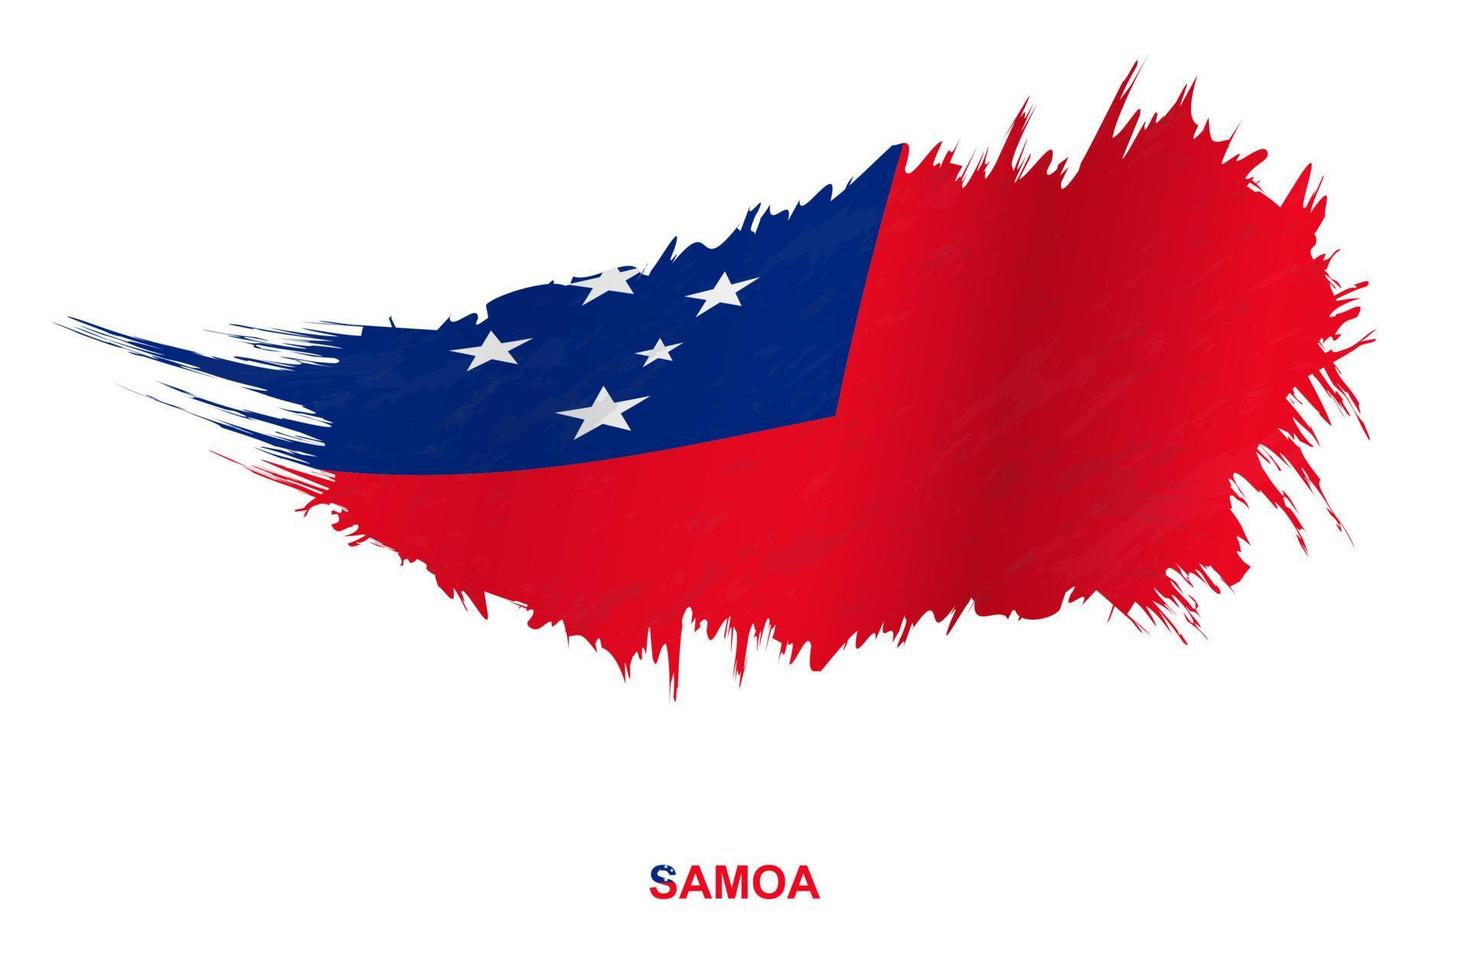 bandera de samoa en estilo grunge con efecto ondulante. vector